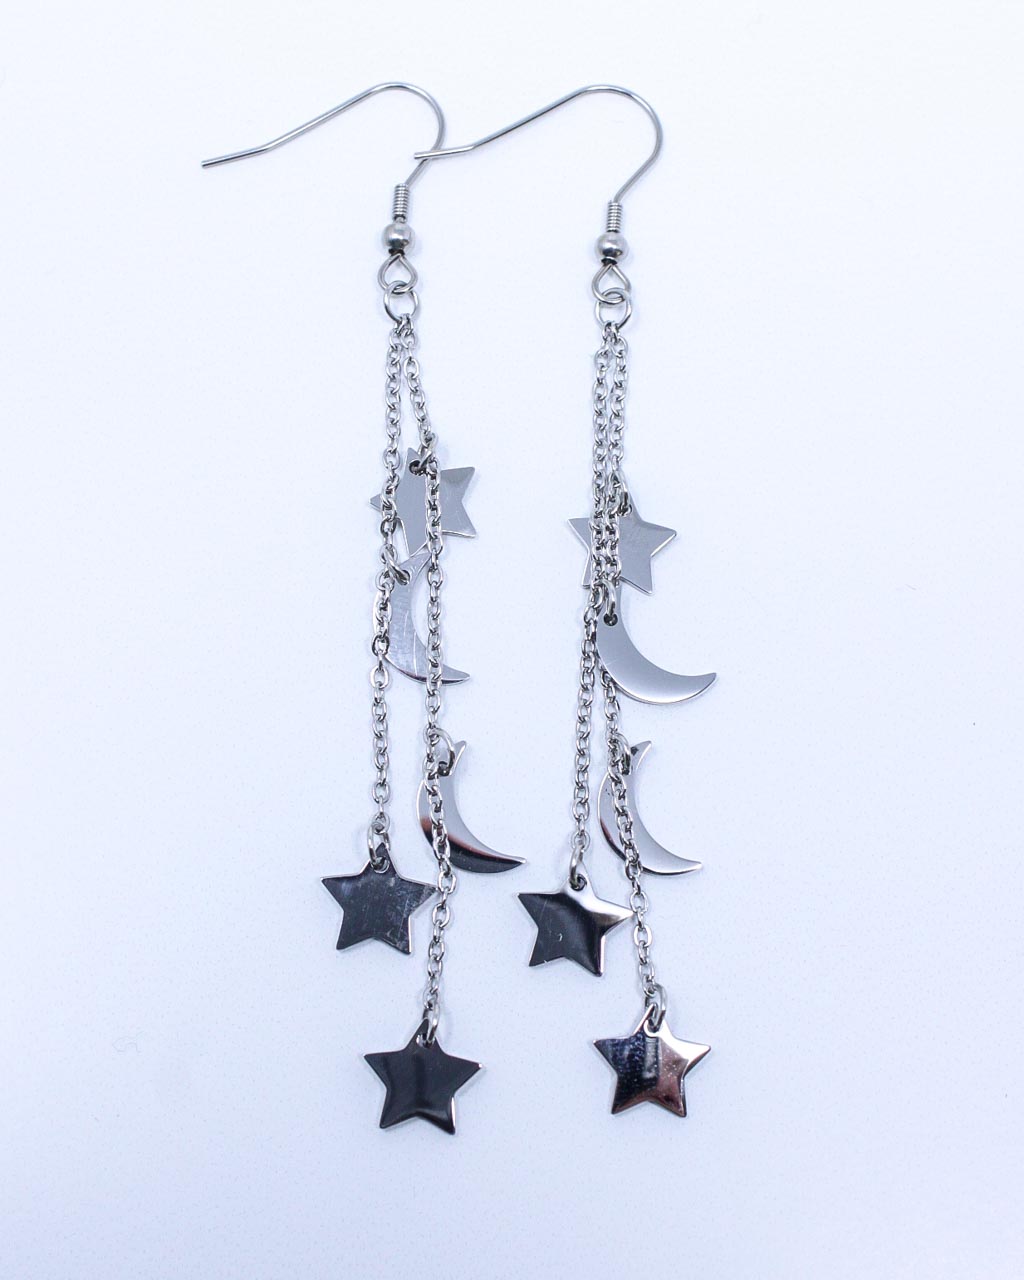 Prancing Moon & Star Earrings